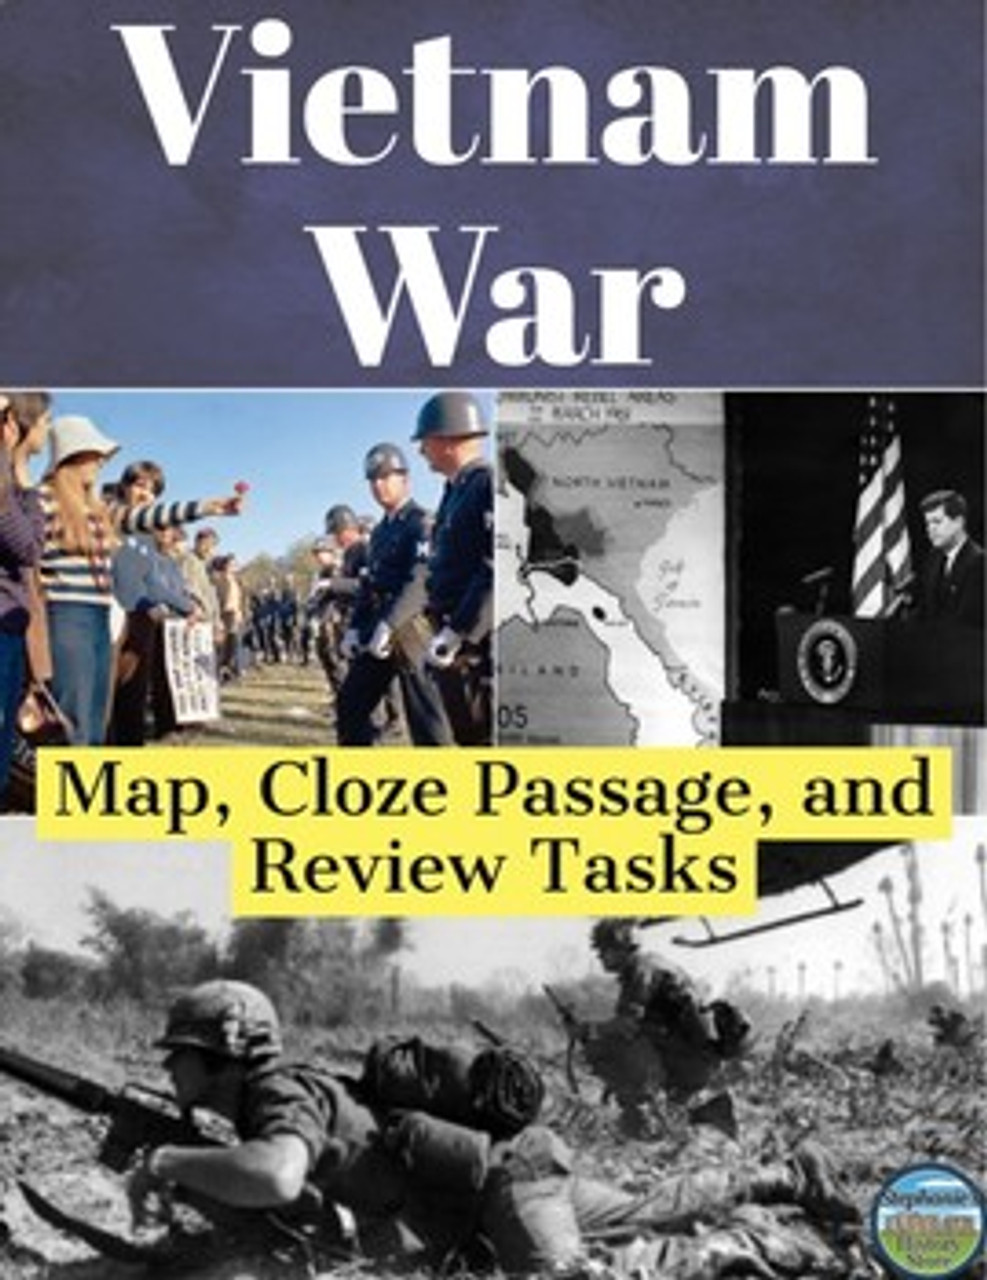 The Vietnam War Map and Activities